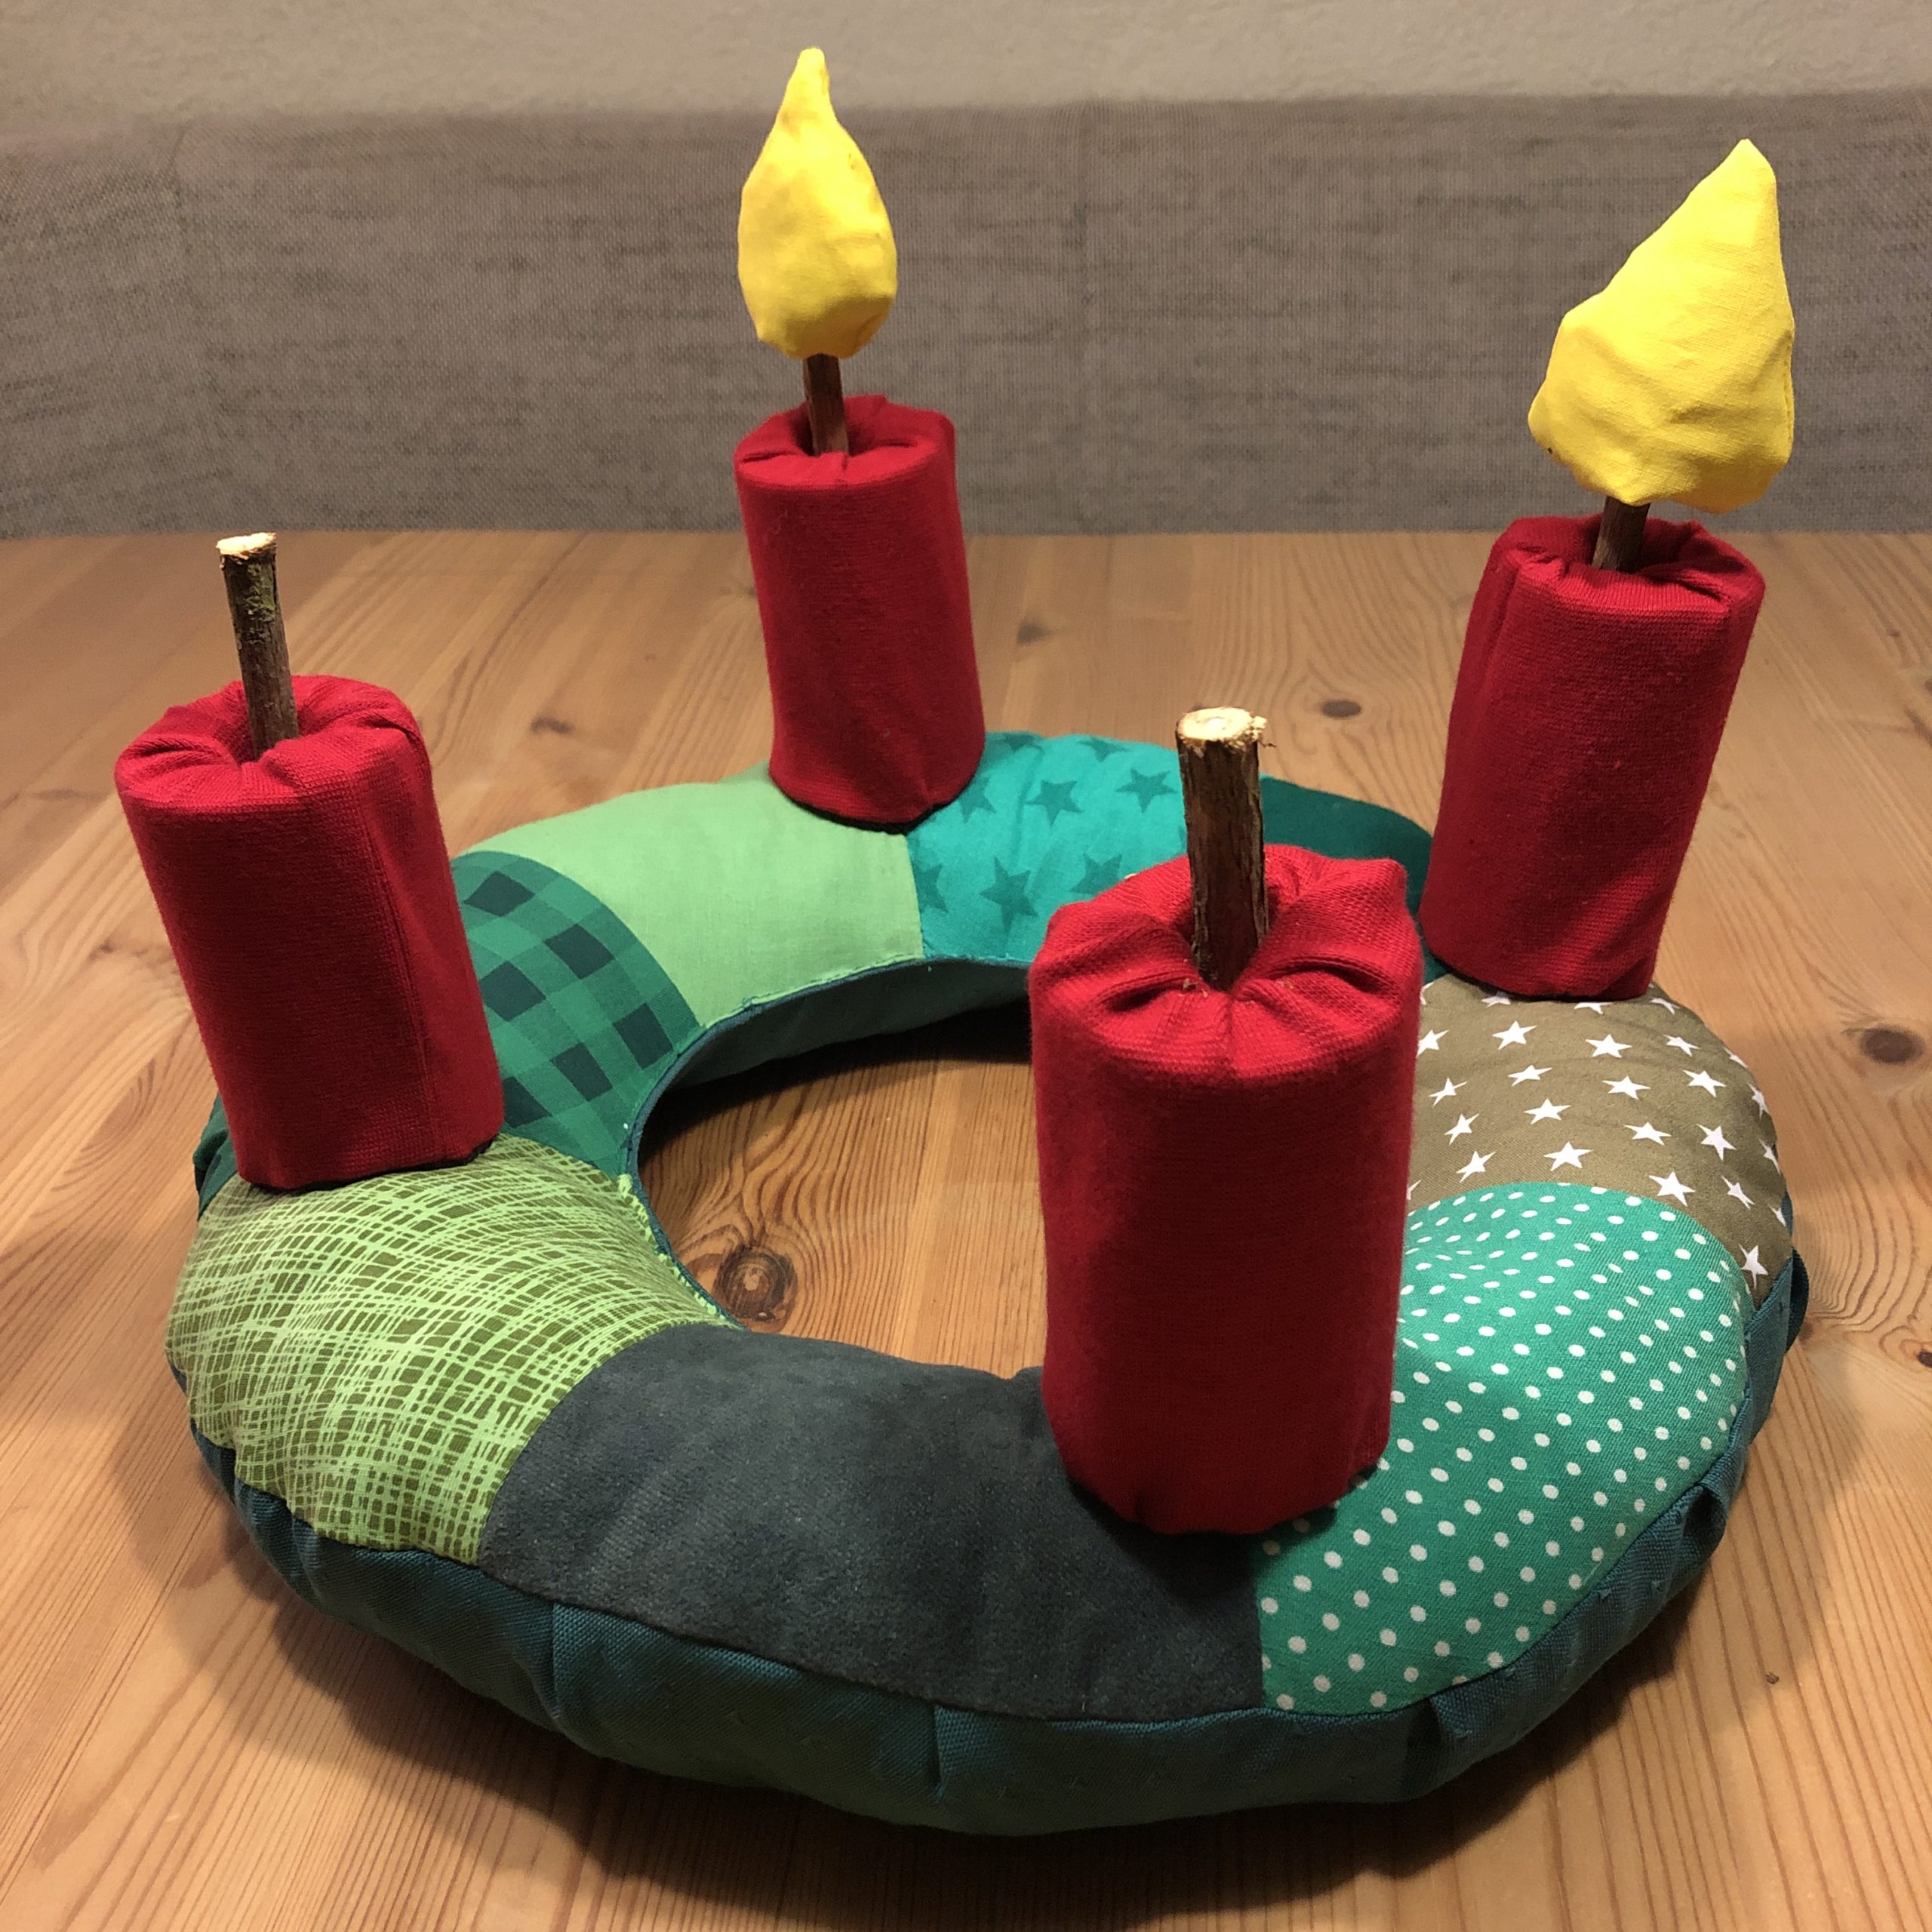 Bild zum Schritt 78 für das Bastel- und DIY-Abenteuer für Kinder: 'An jedem Adventssonntag könnt ihr eine weitere Flamme aufstecken.'